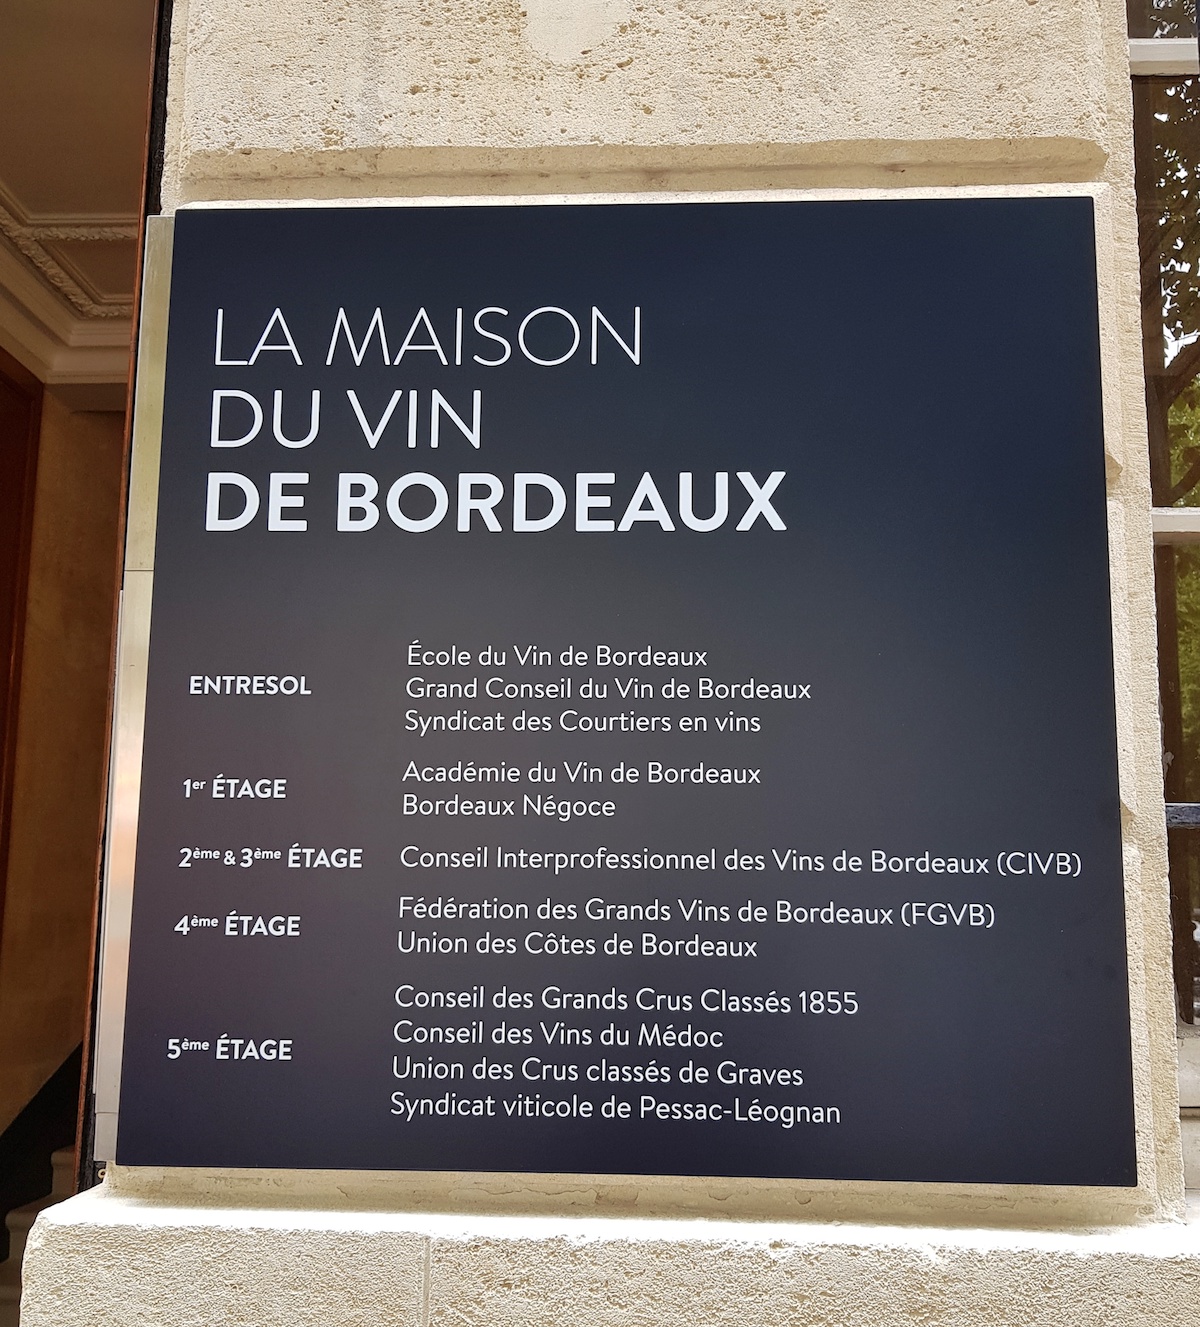 La Maison du vin de Bordeaux